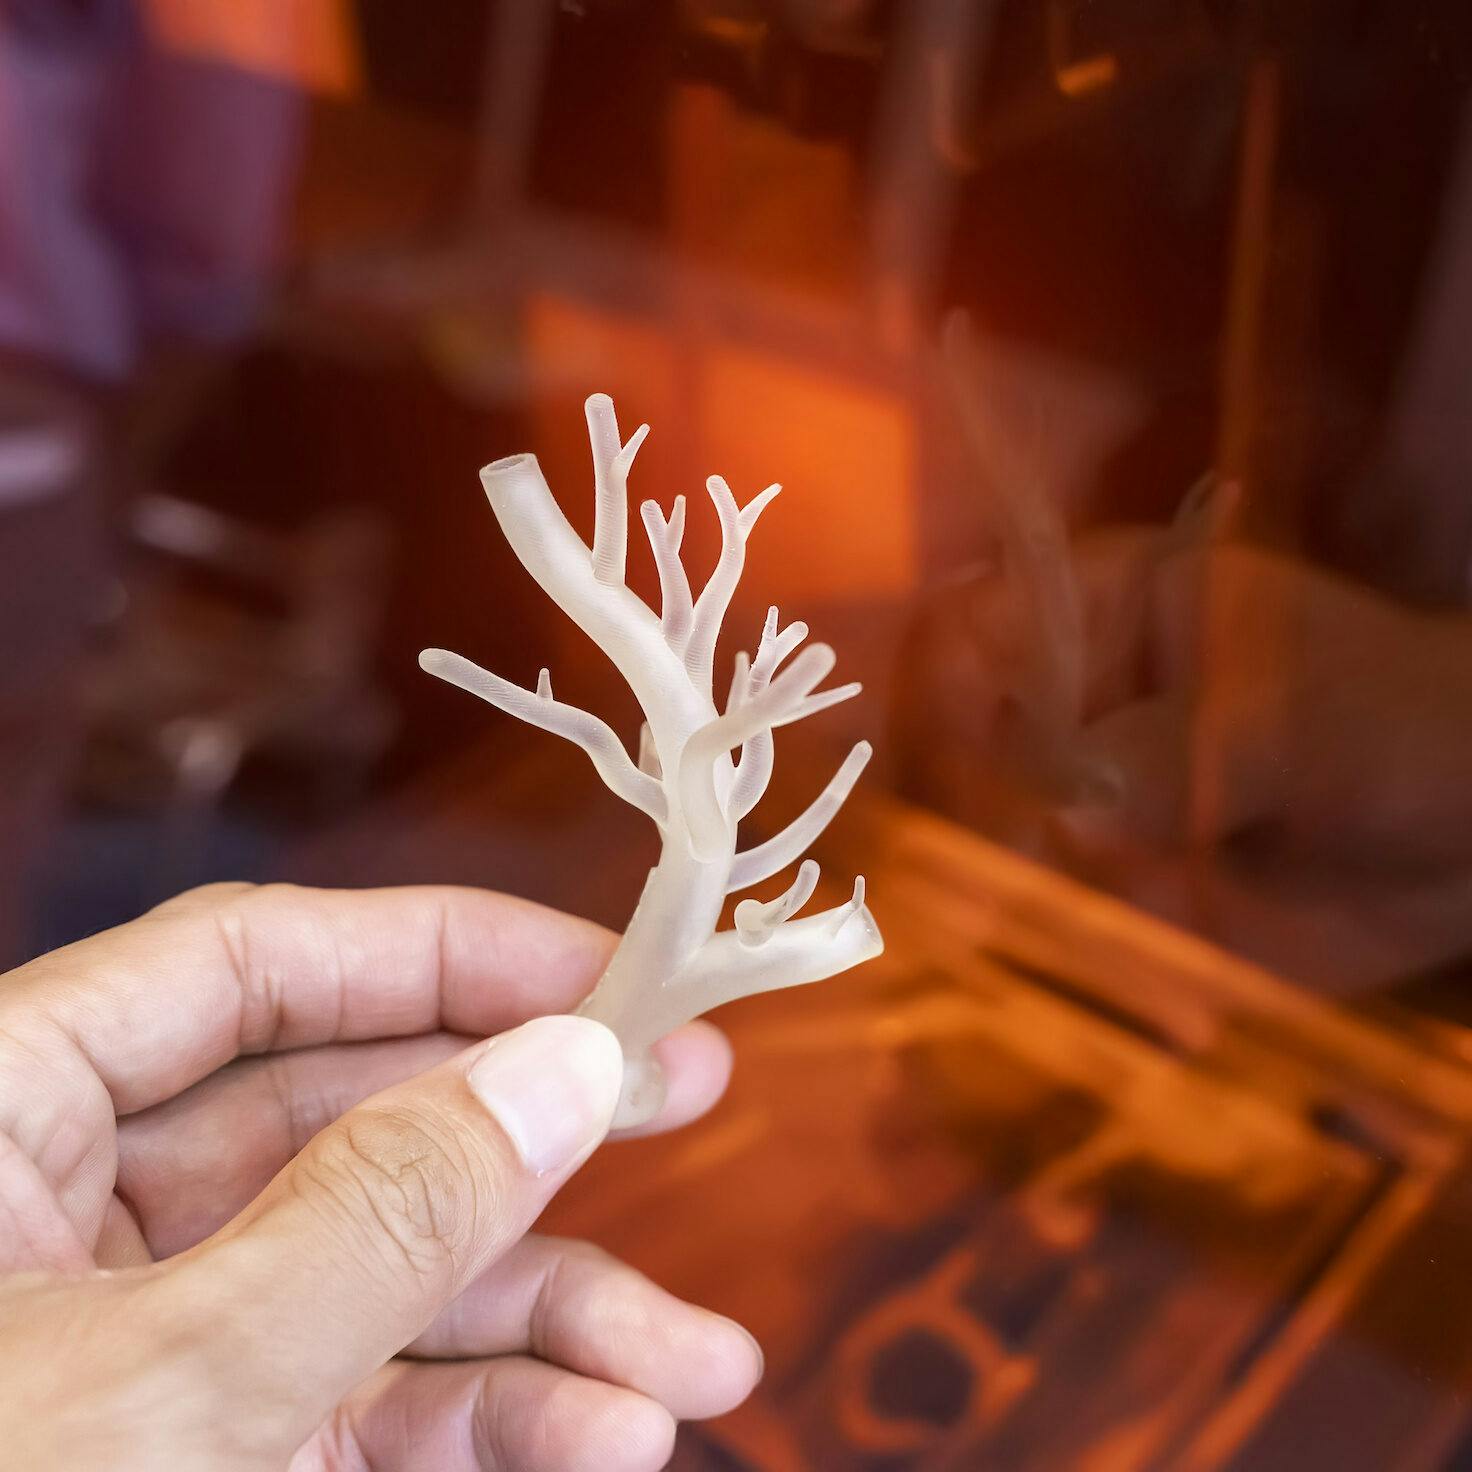 3D-printed blood vessels